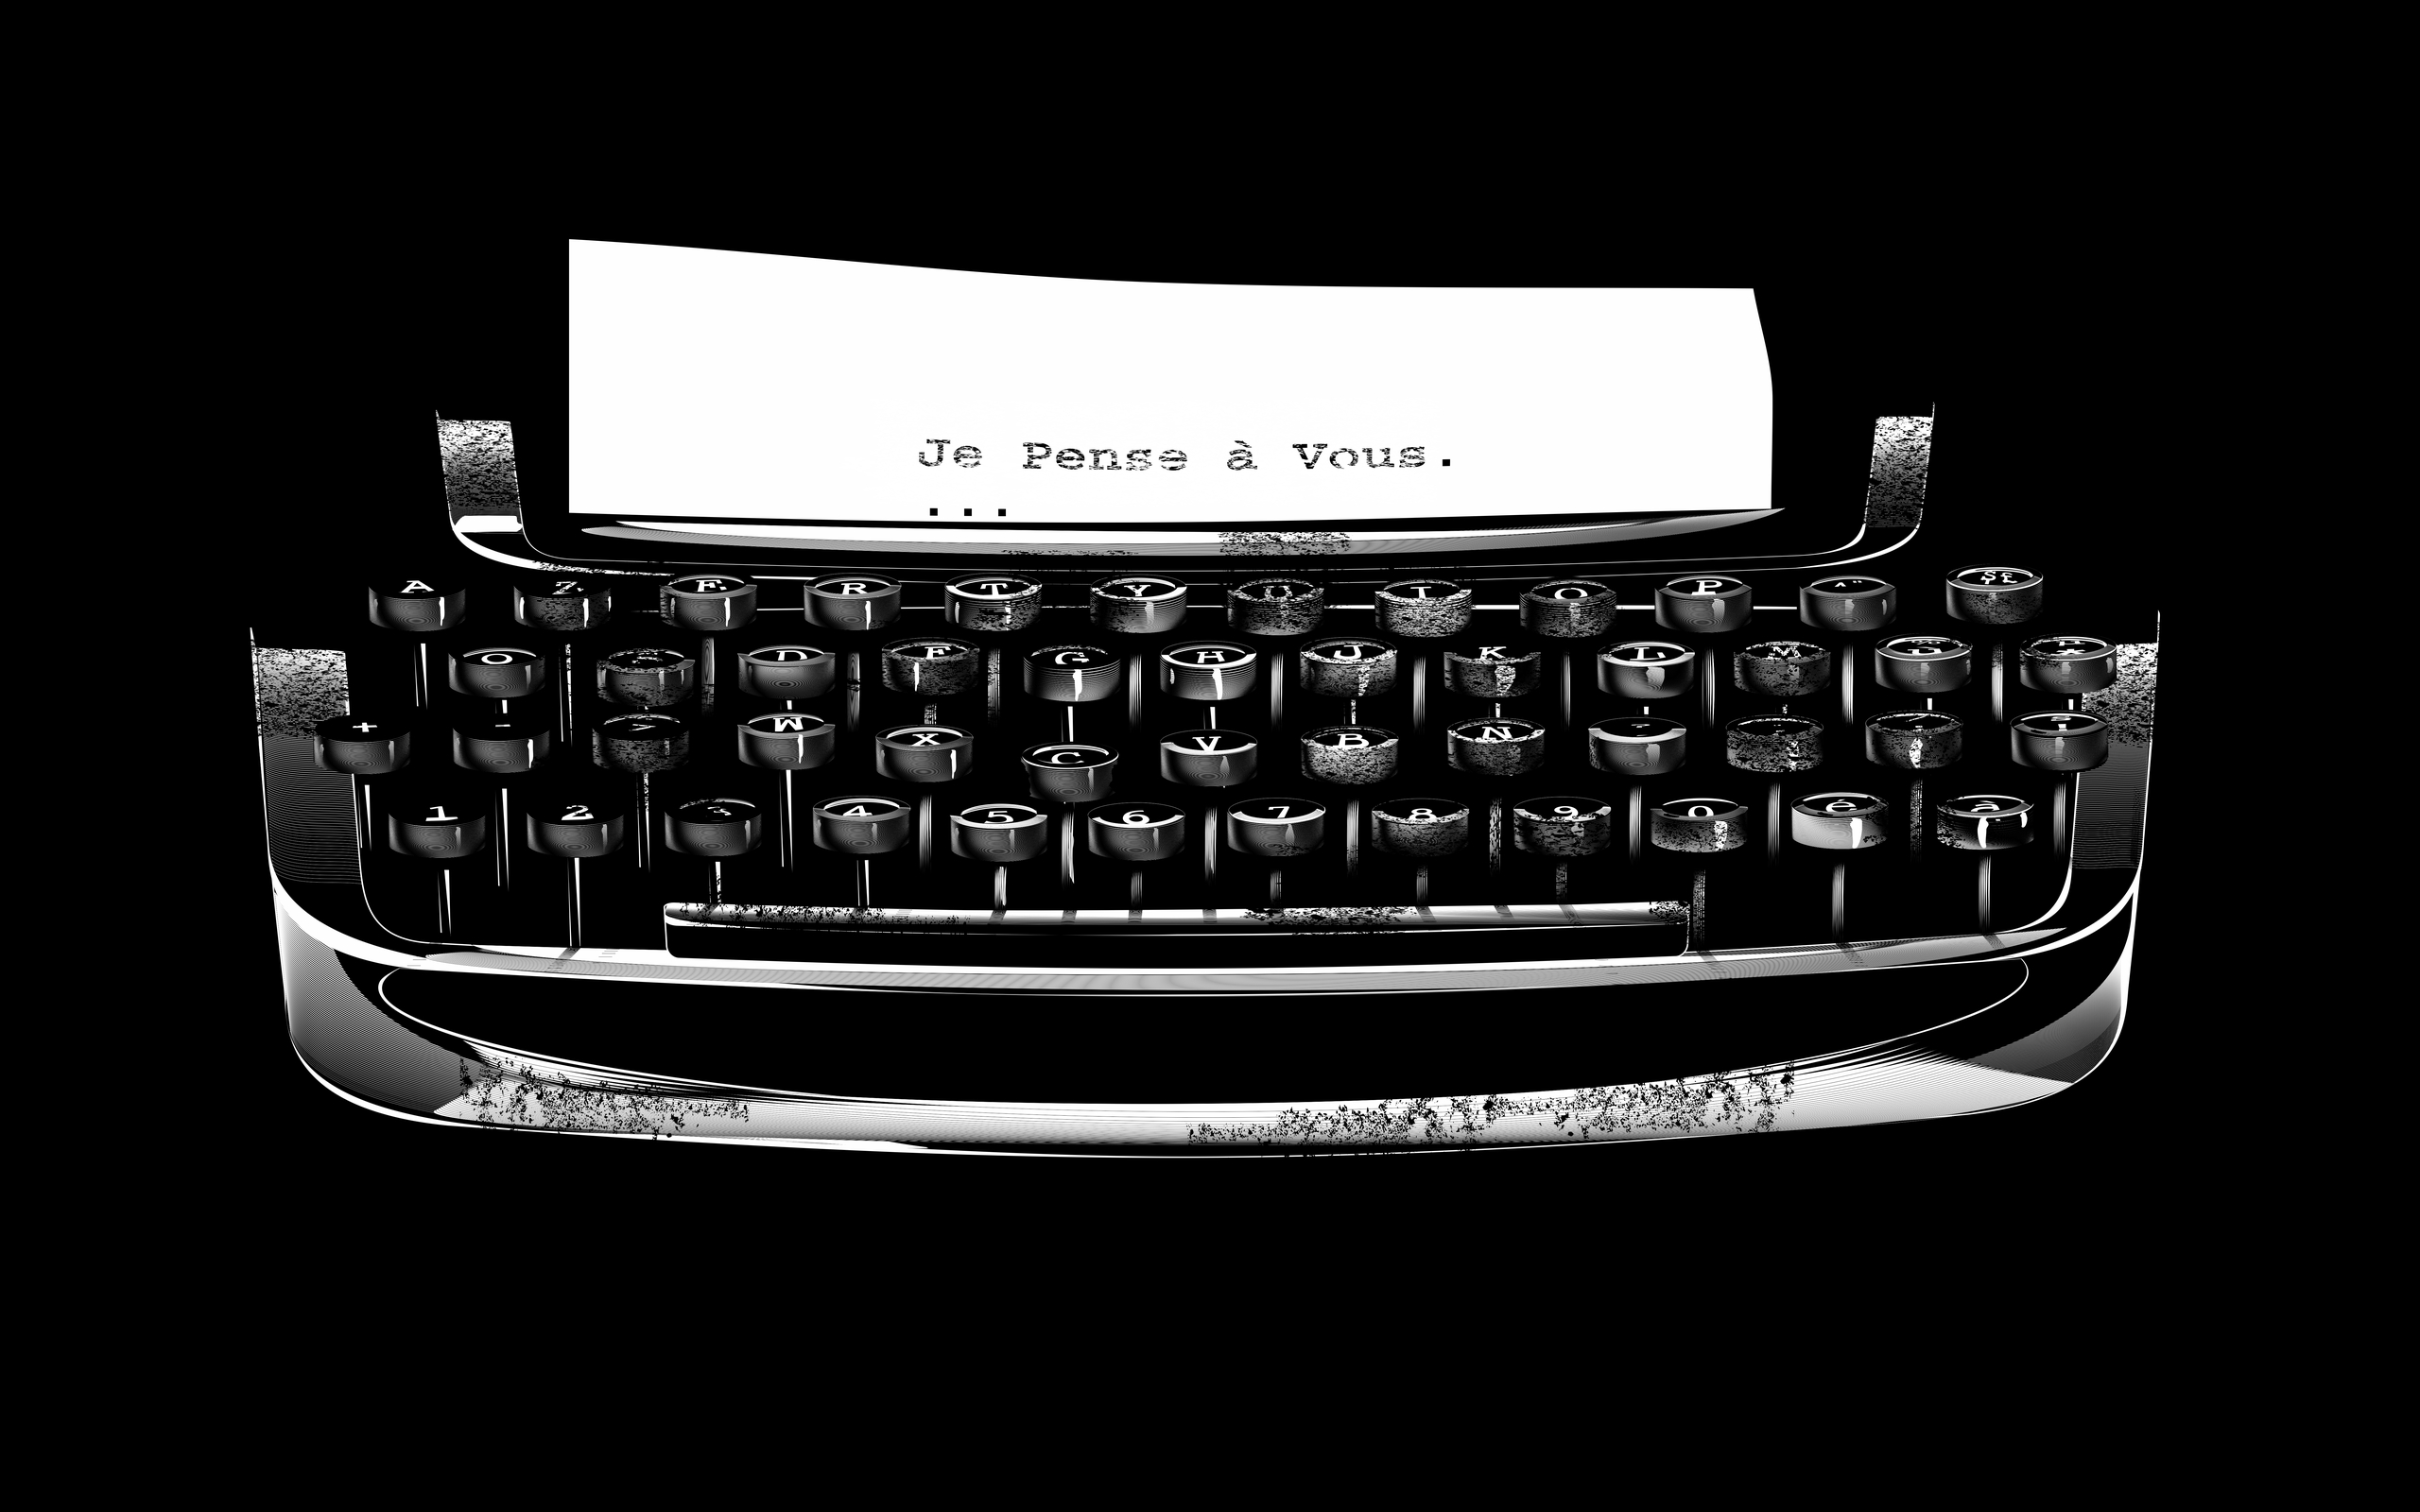 typewriter, man made